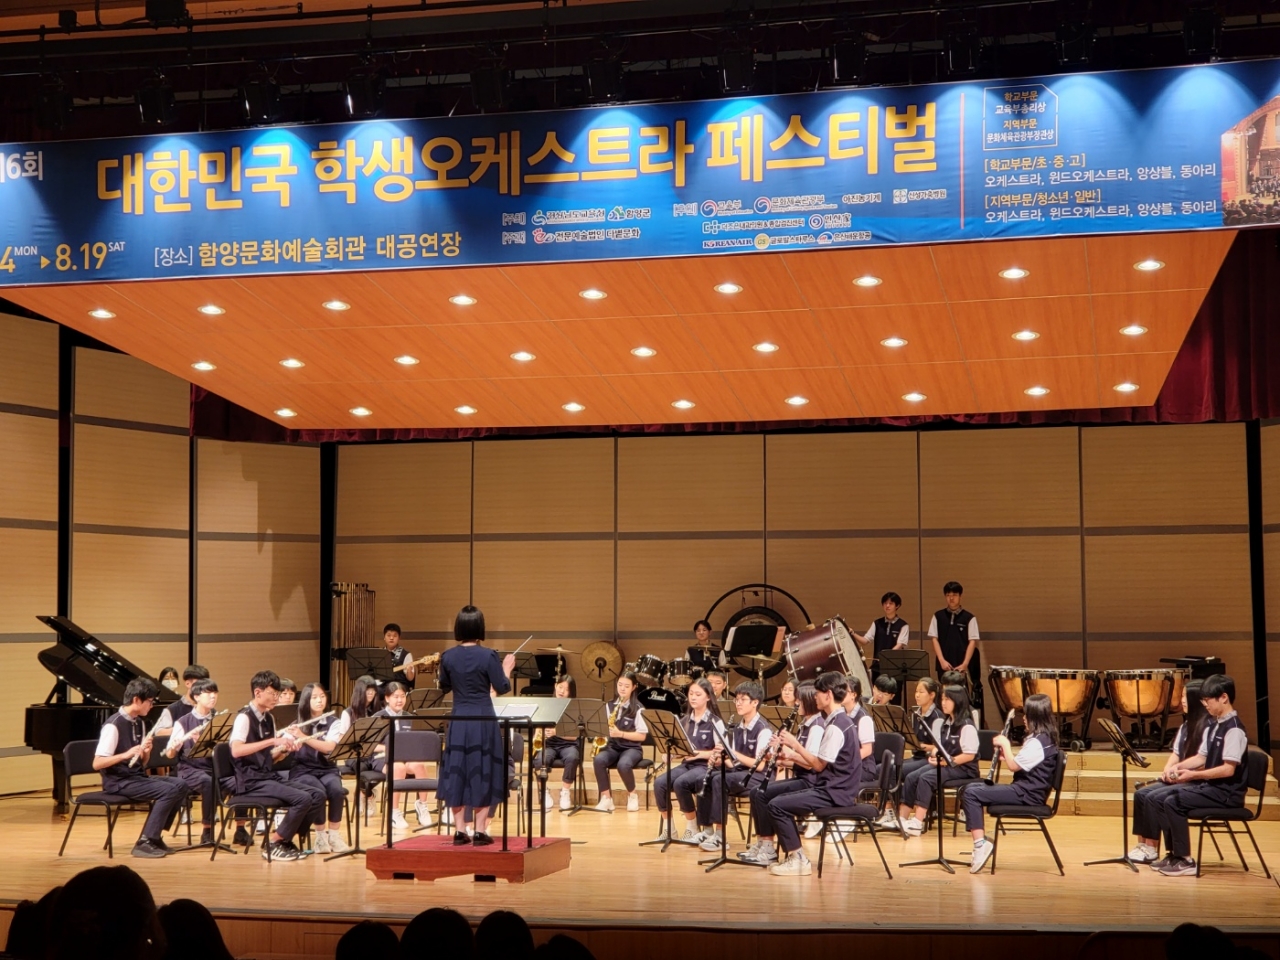 지난 8월 19일 함양문화예술회관에서 열린 제6회 대한민국 학생오케스트라 페스테벌 무대에서 성포중학교 '빛빠람앙상블'이 연주하고 있다. /성포중학교 제공